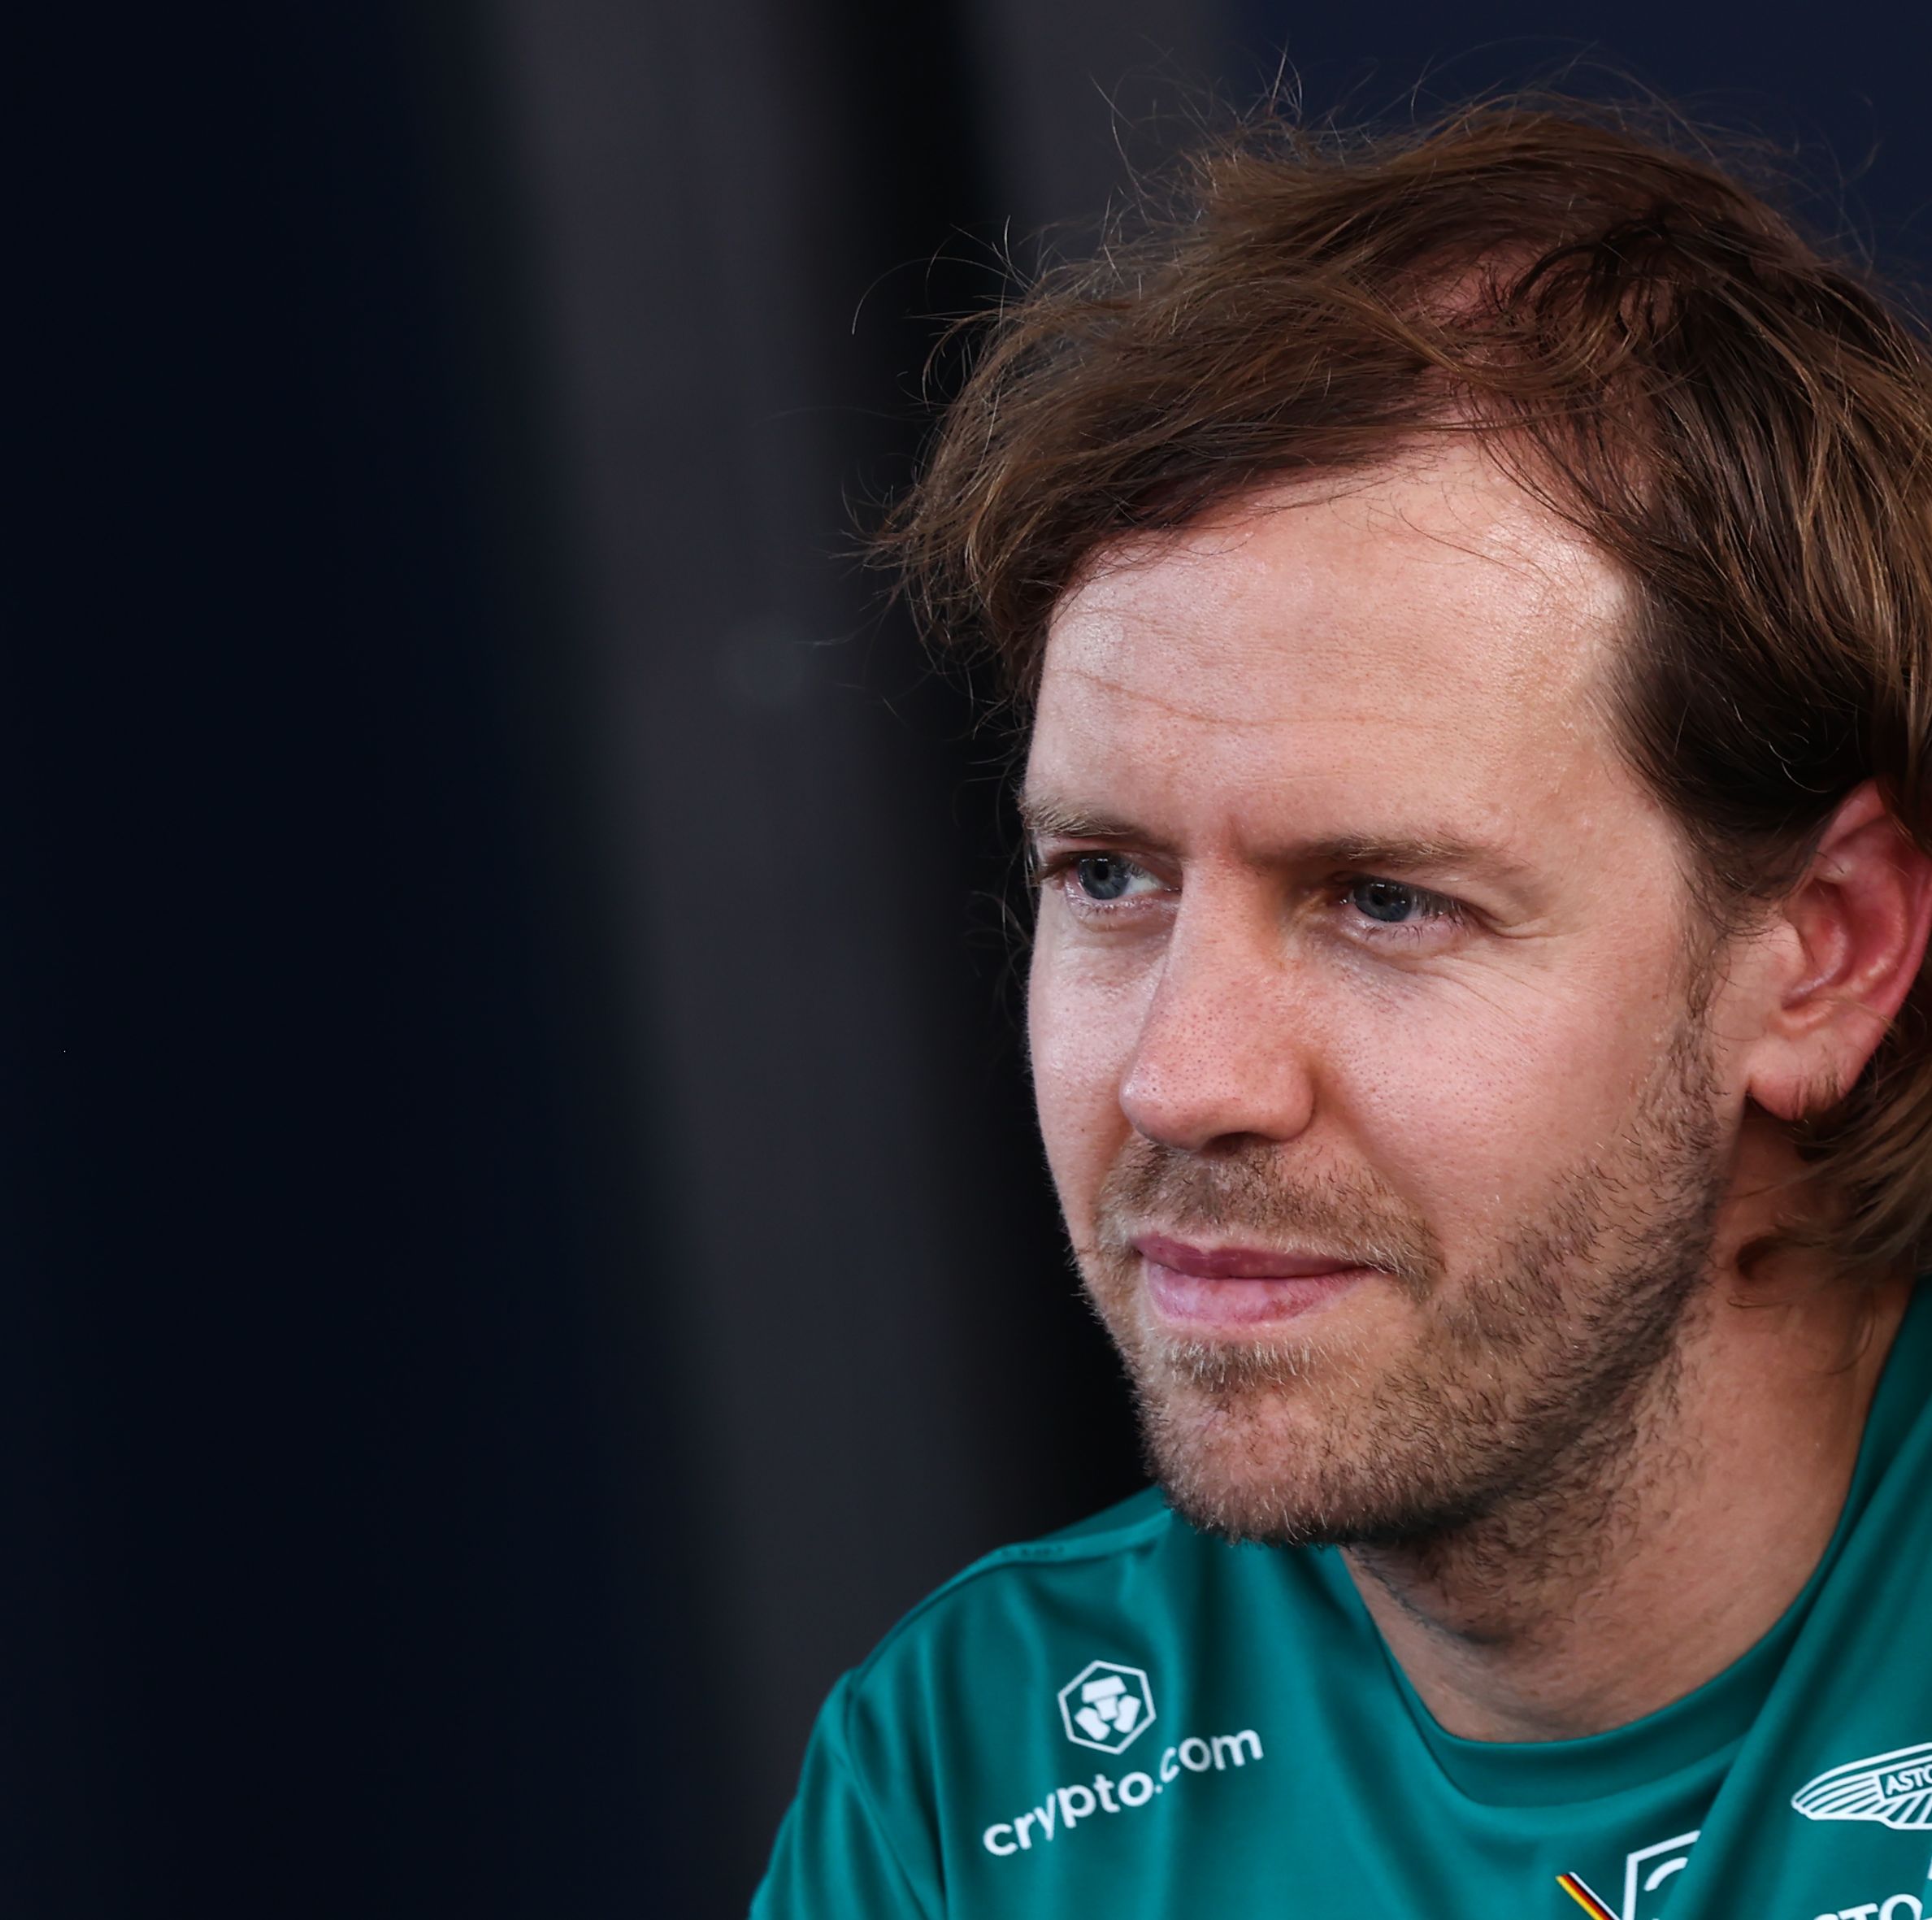 Four-Time World Champion Sebastian Vettel Announces Retirement from Formula 1